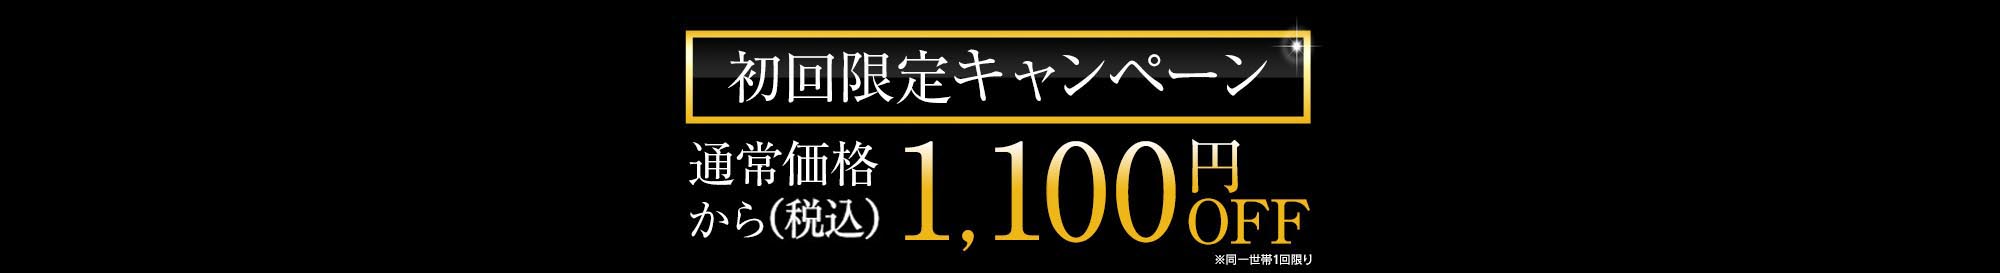 初回限定キャンペーン1000円OFF